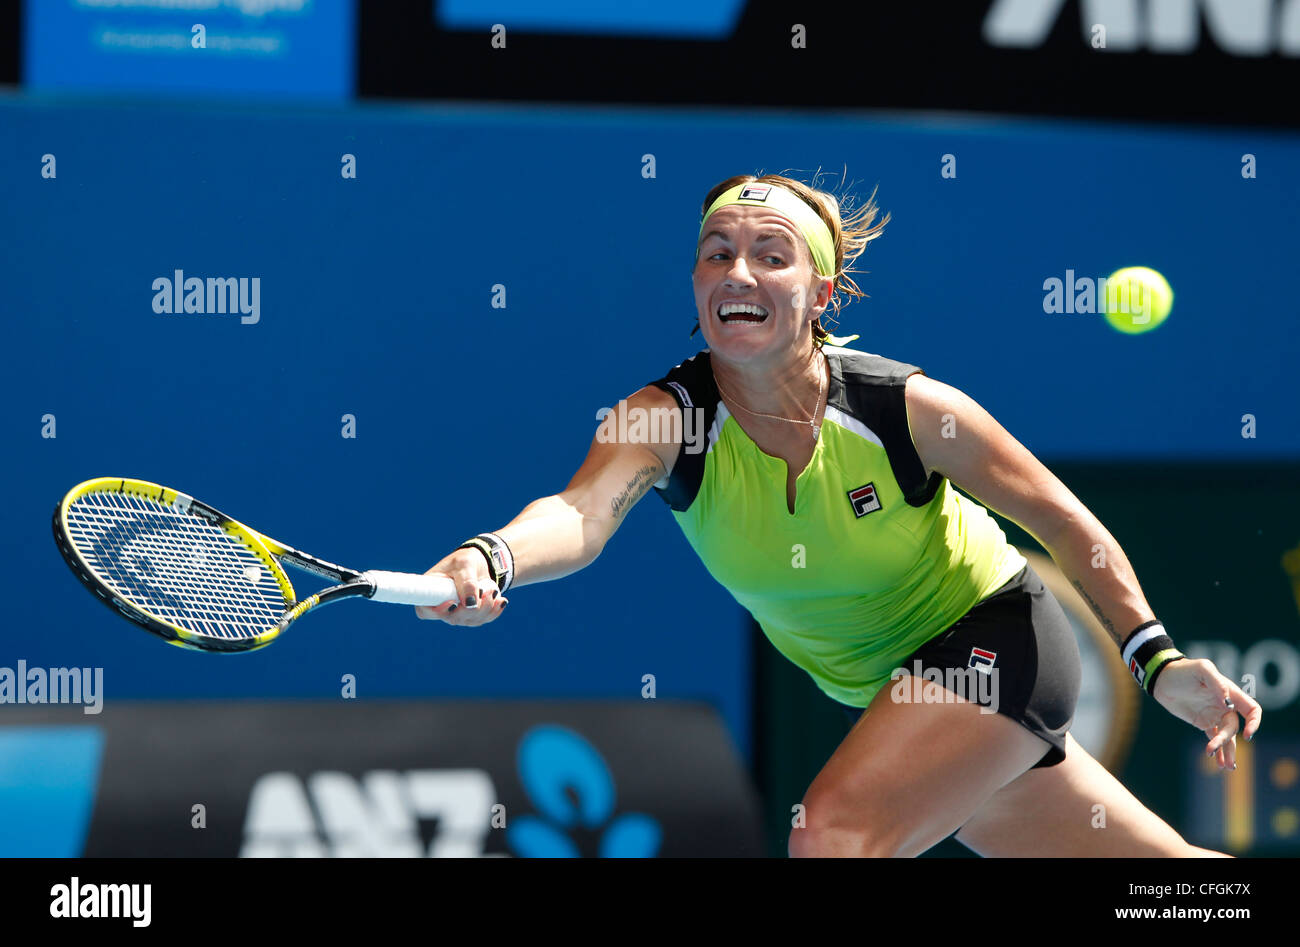 Svetlana Kuznetsova (RUS) at the Australian Open 2012, ITF Grand Slam Tennis Tournament, Melbourne Park,Australia. Stock Photo